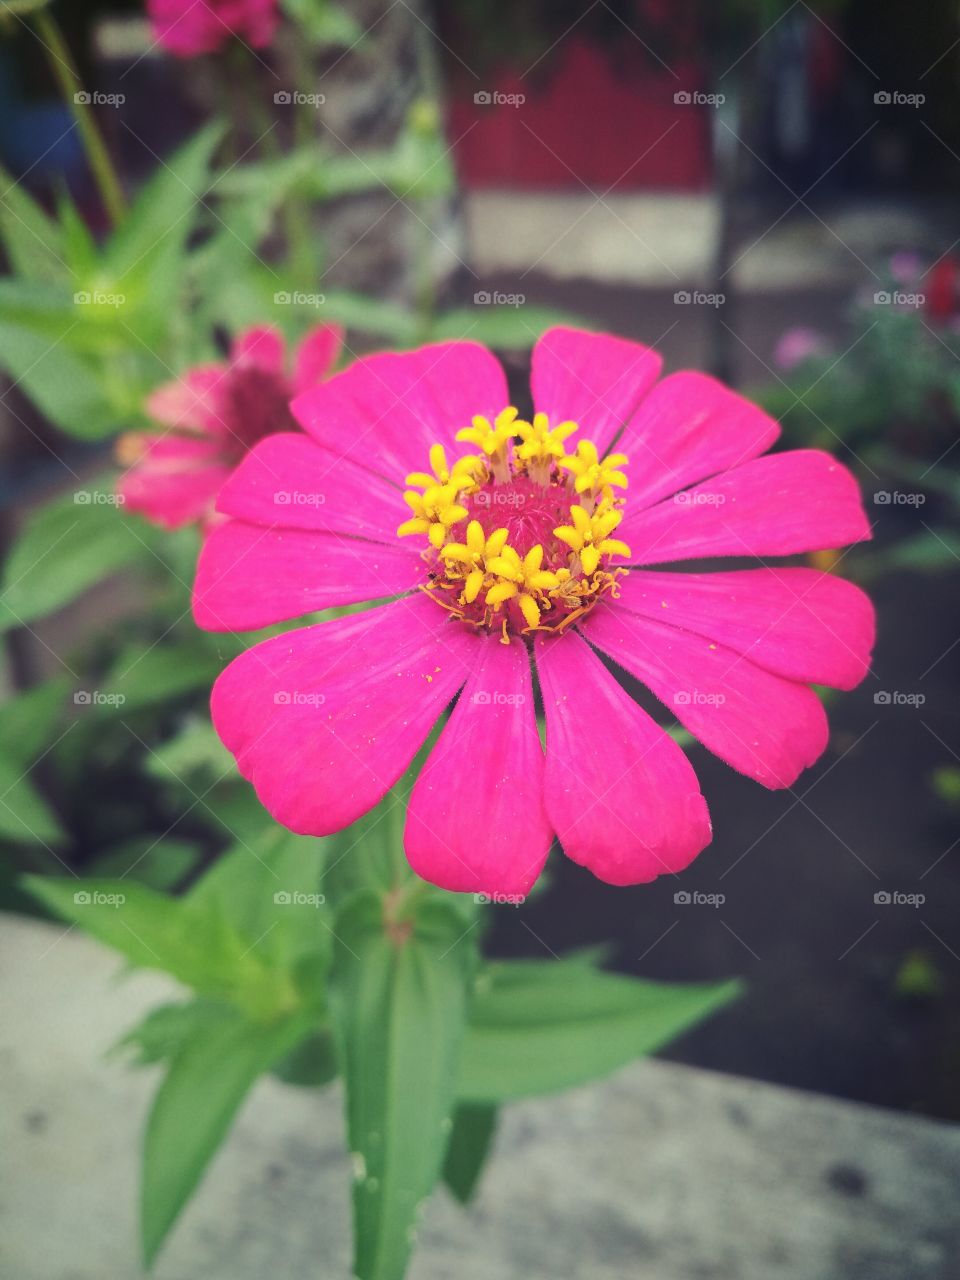 #flower